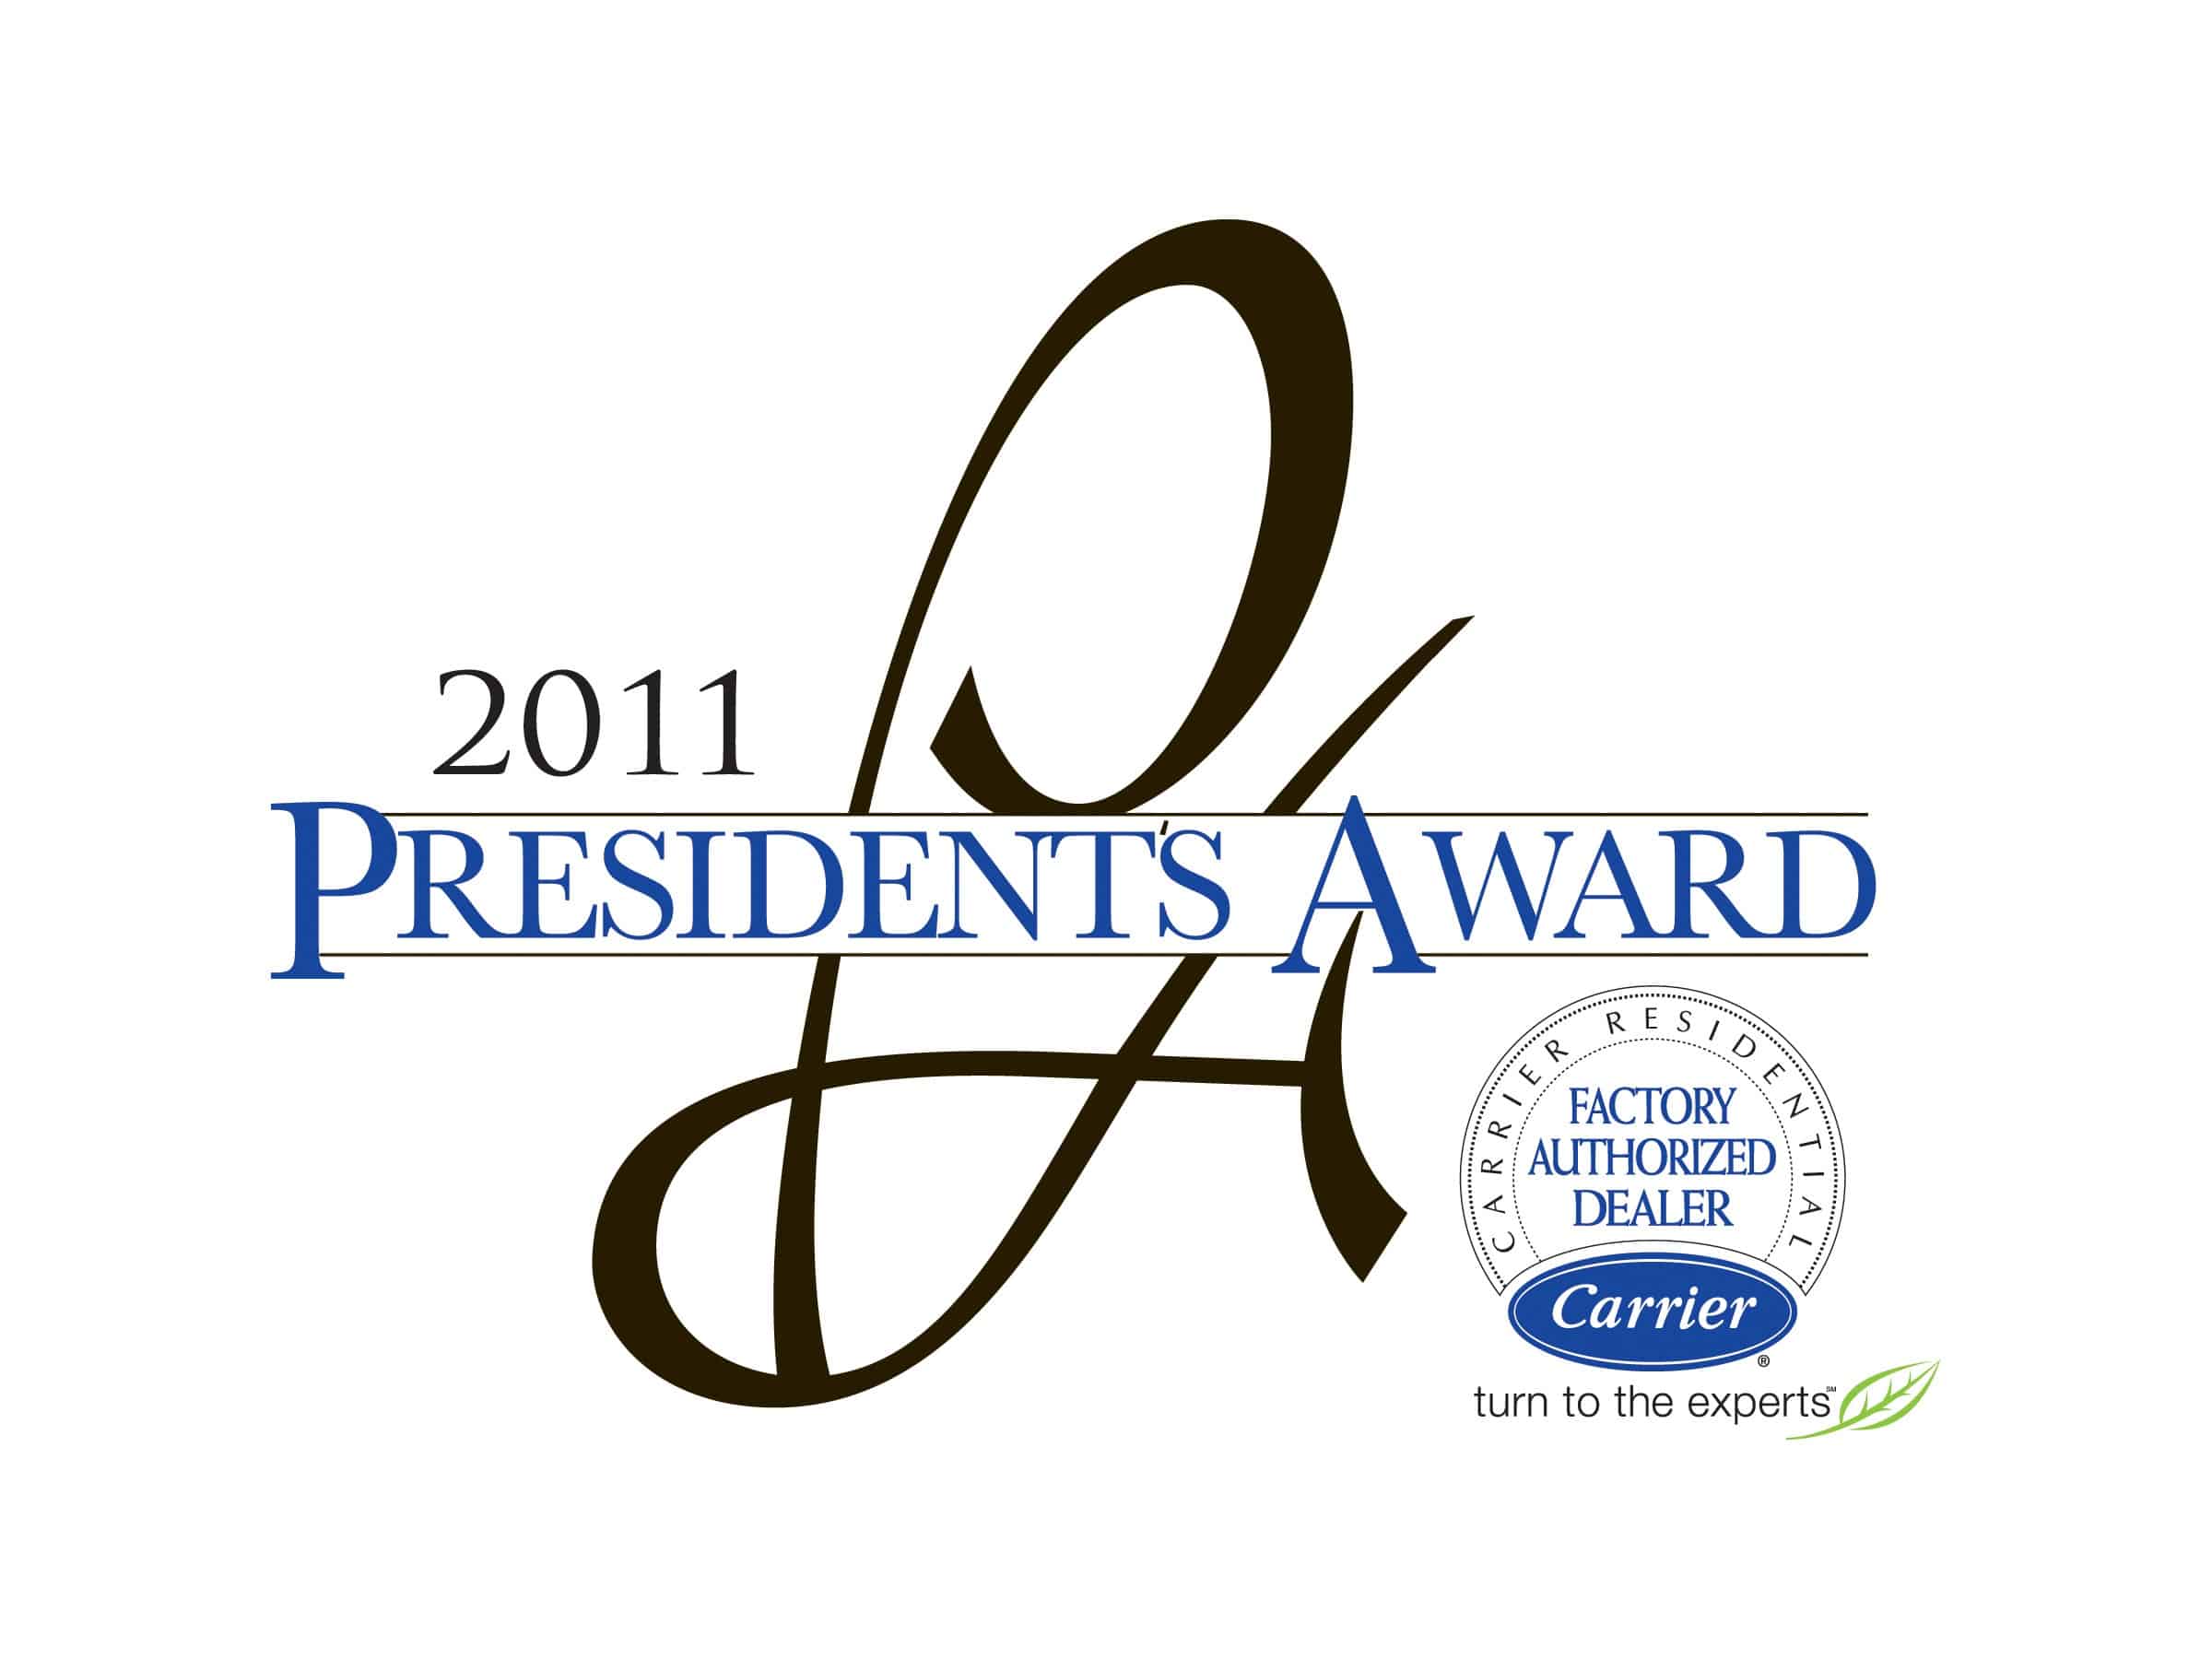 2011 President's Award